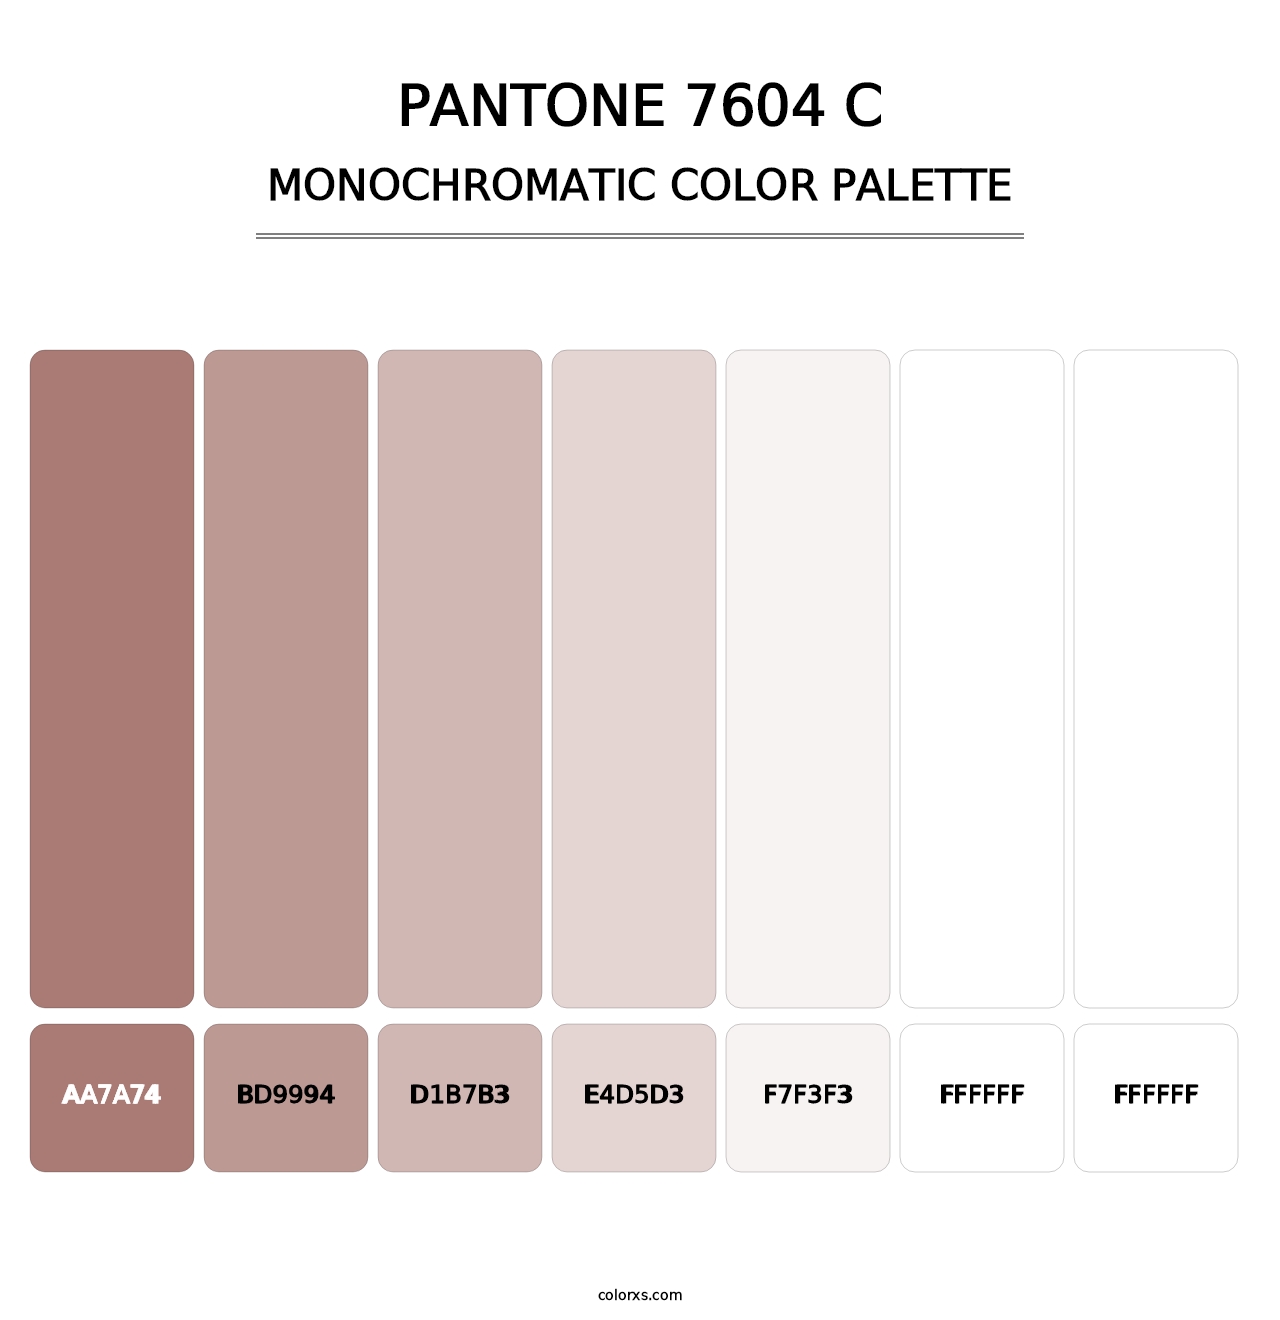 PANTONE 7604 C - Monochromatic Color Palette